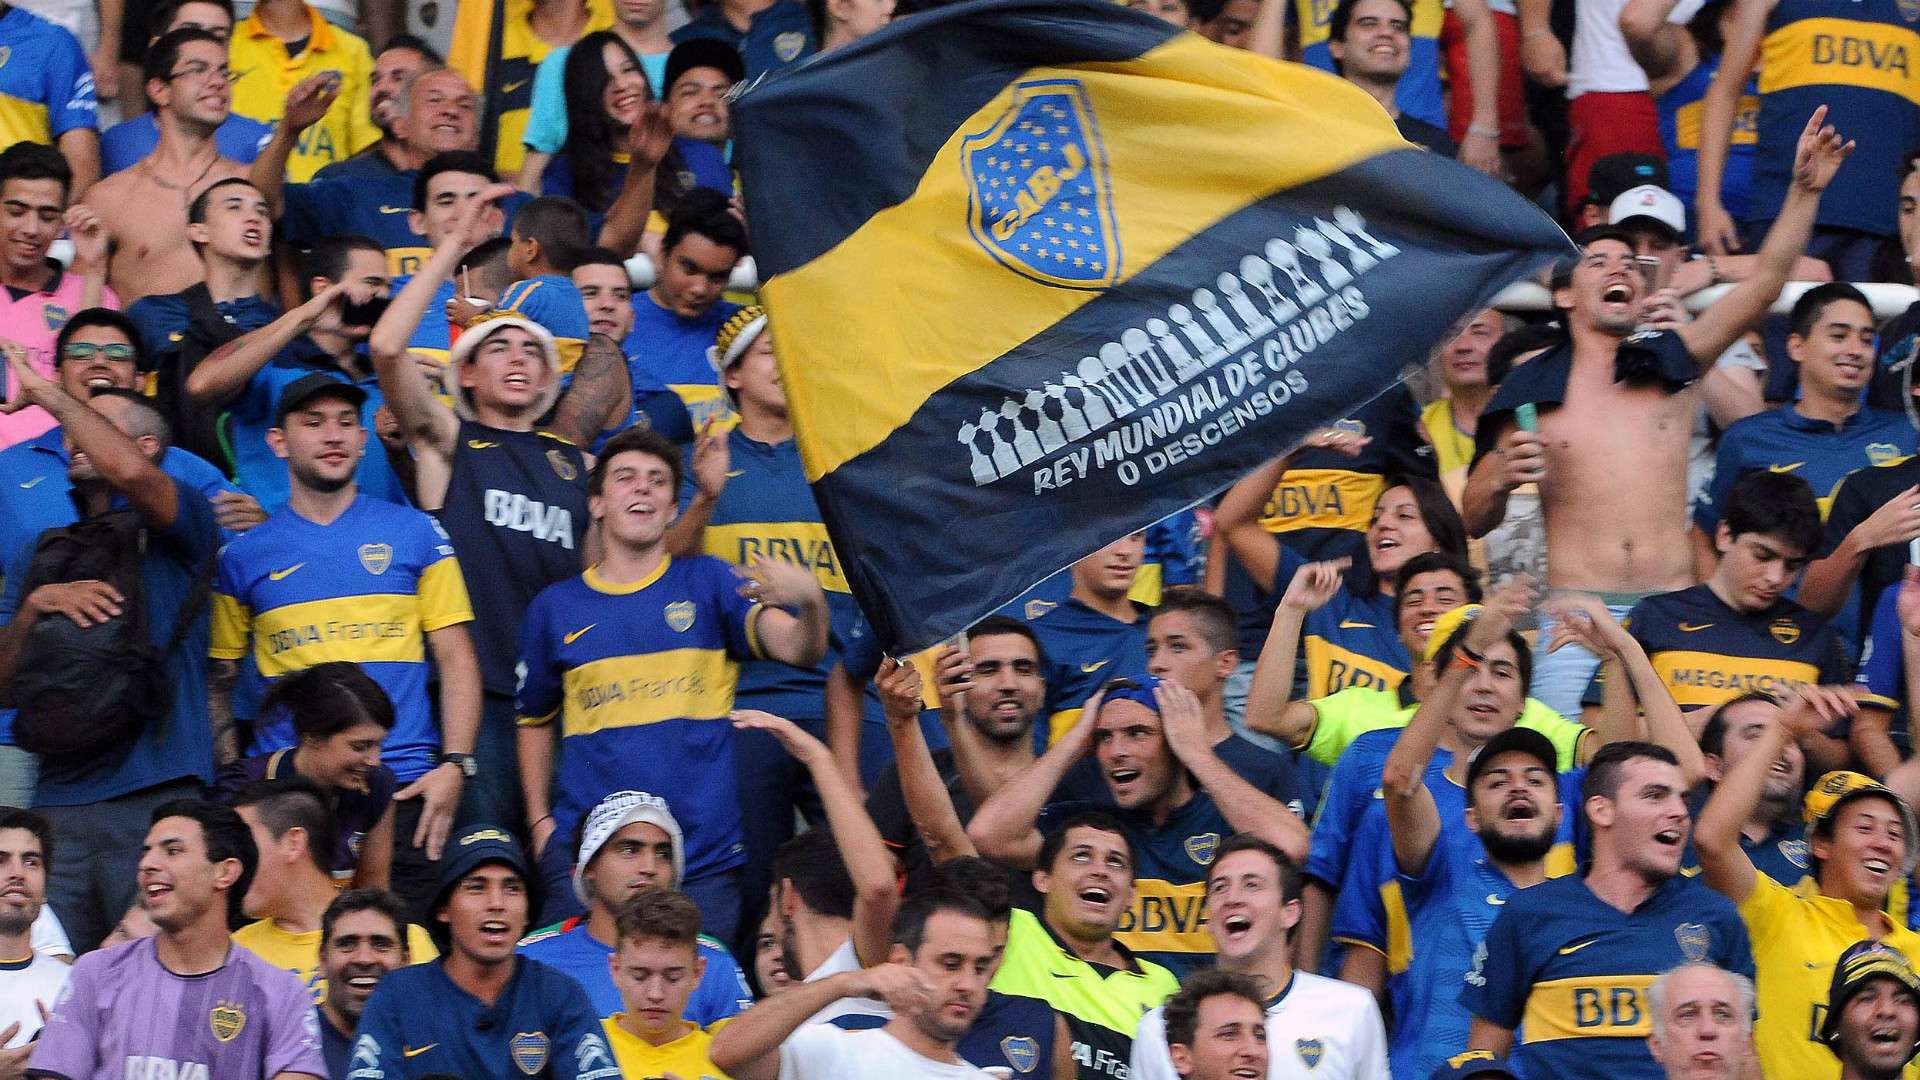 Hinchas Boca Juniors Supercopa Argentina